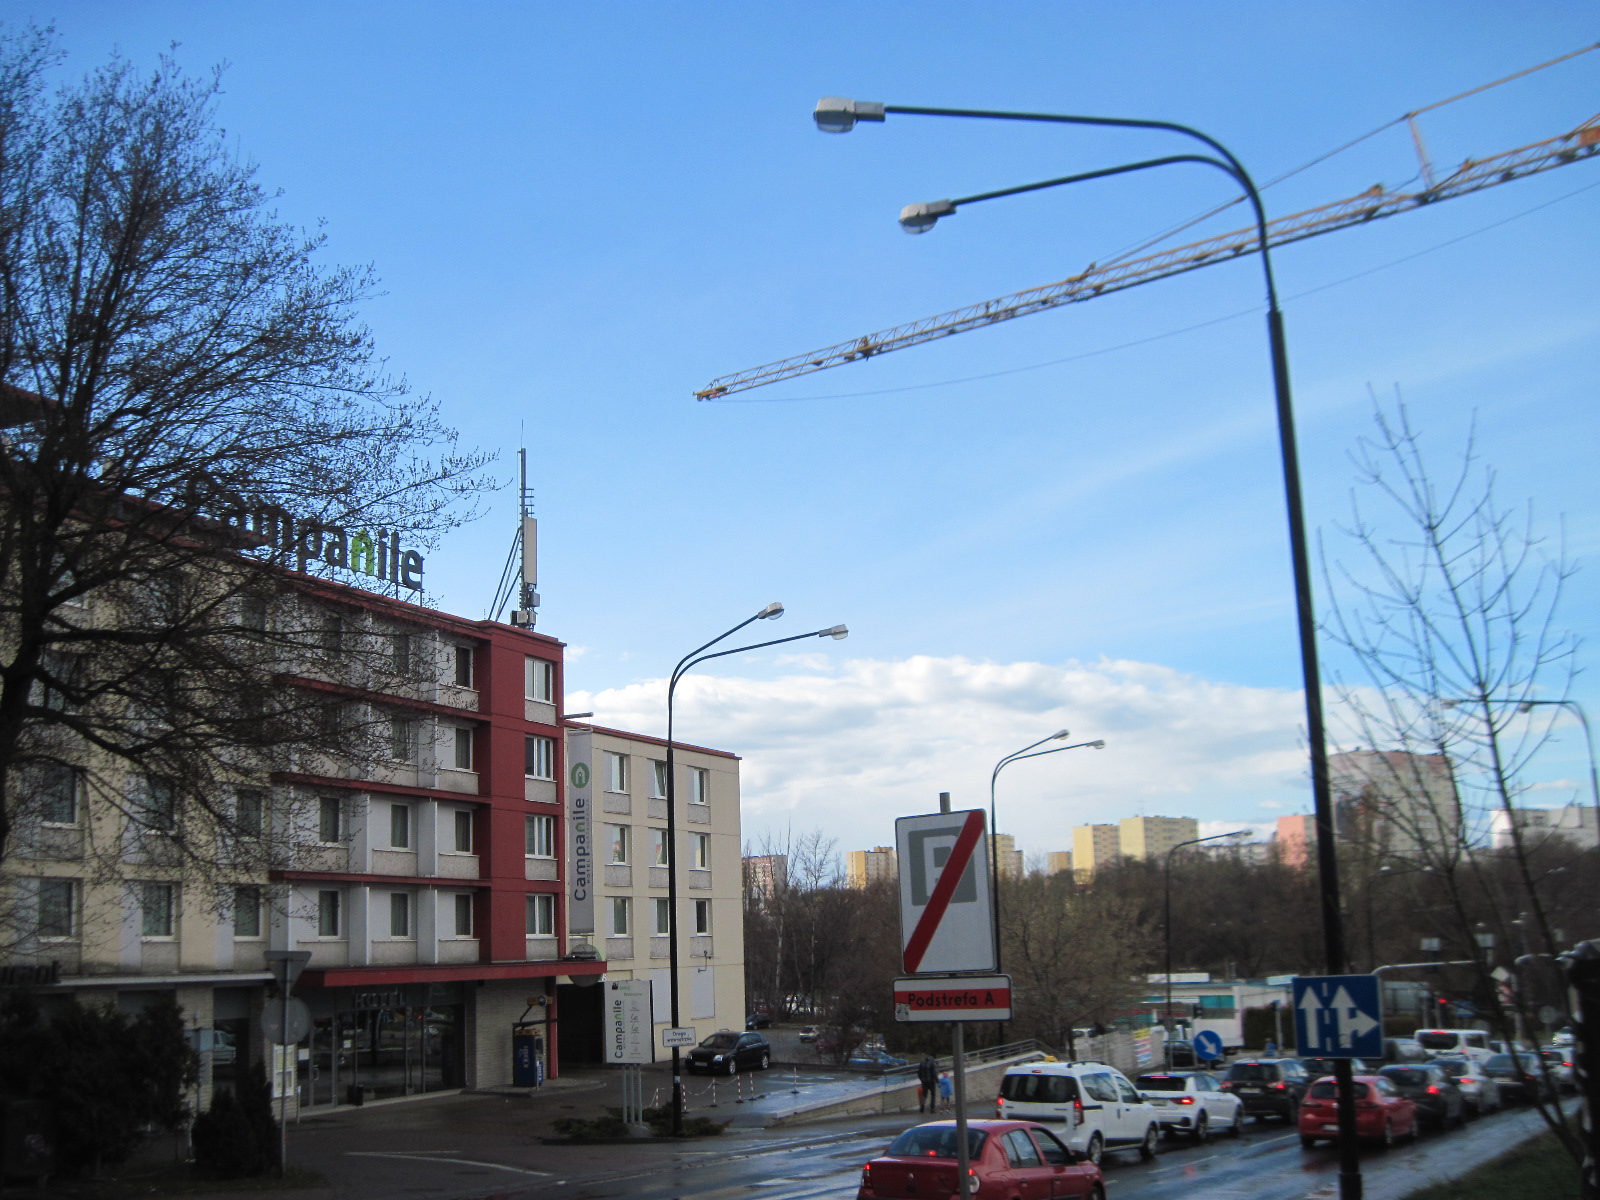 Nad ul. Lubomelską w Lublinie operuje żuraw budowlany. Czy to zgodne z przepisami? (zdjęcia)